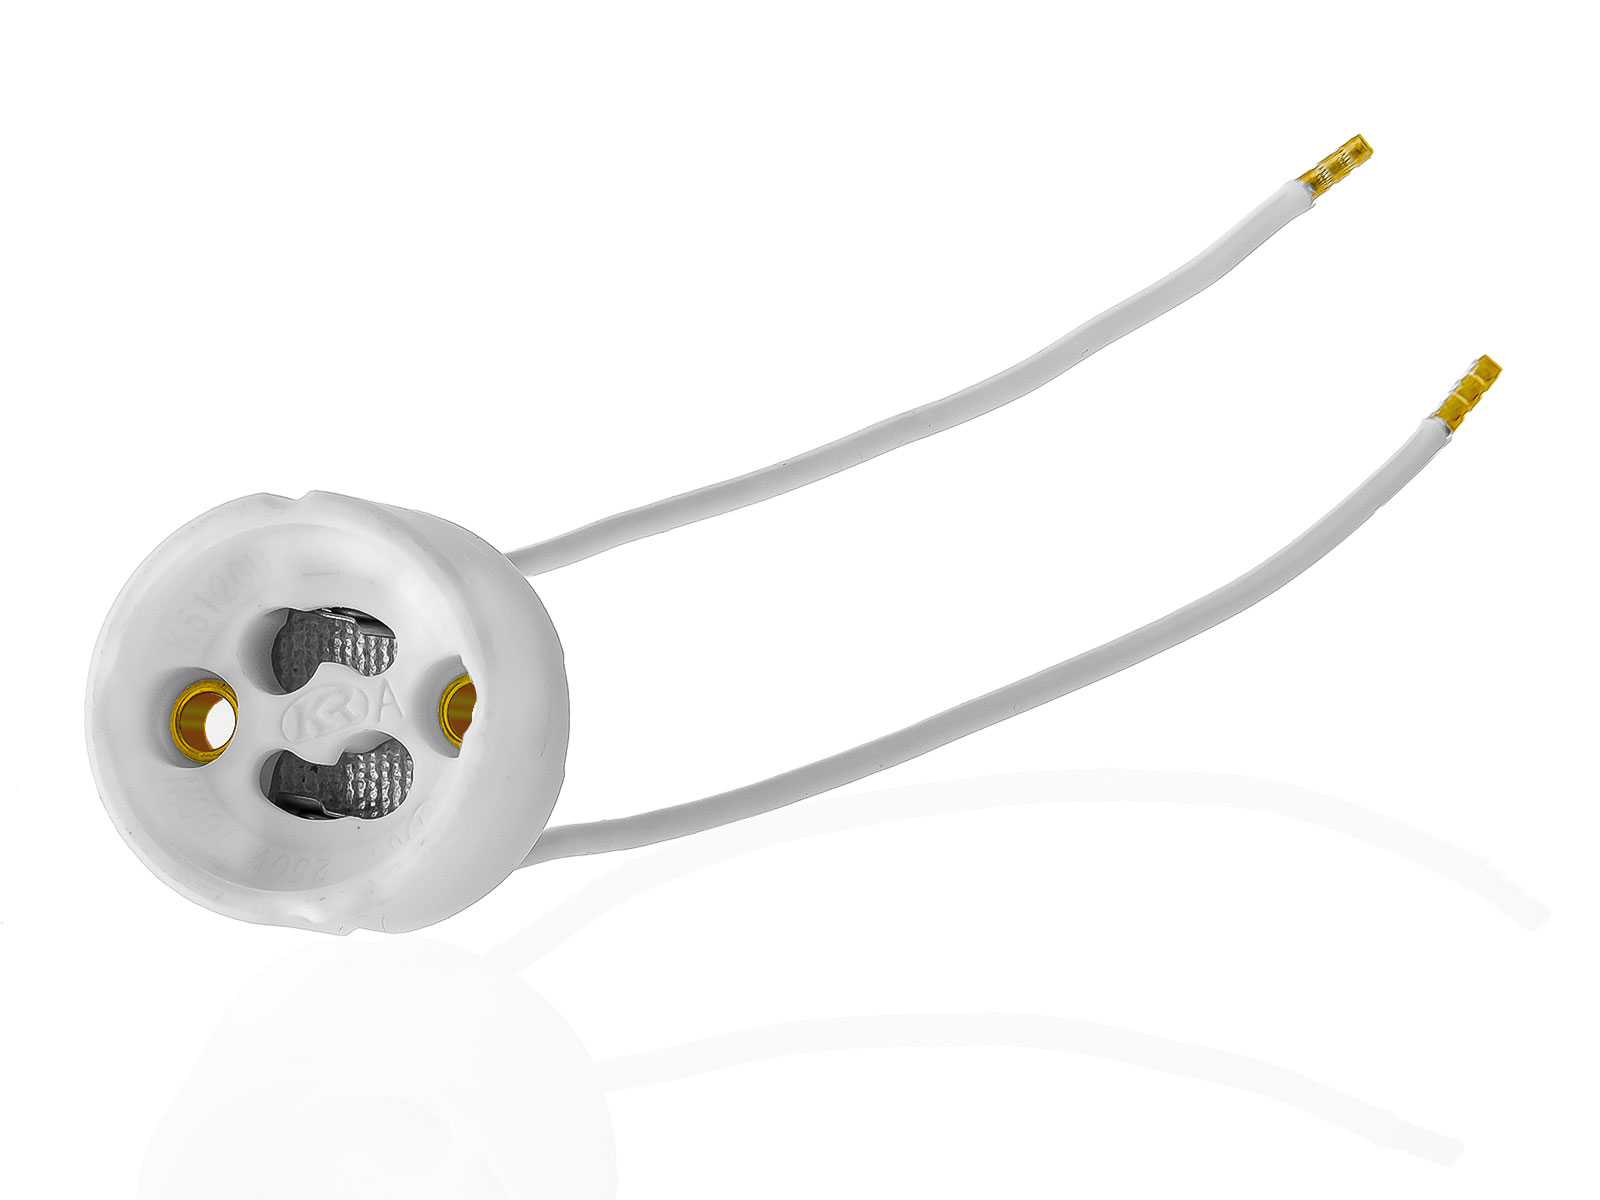 3x GU10 Lampenfassung Sockel aus Keramik mit Qualitäts Silikonkabel für LED und Halogenleuchtmittel XmediaSat GU10.S3 weiß